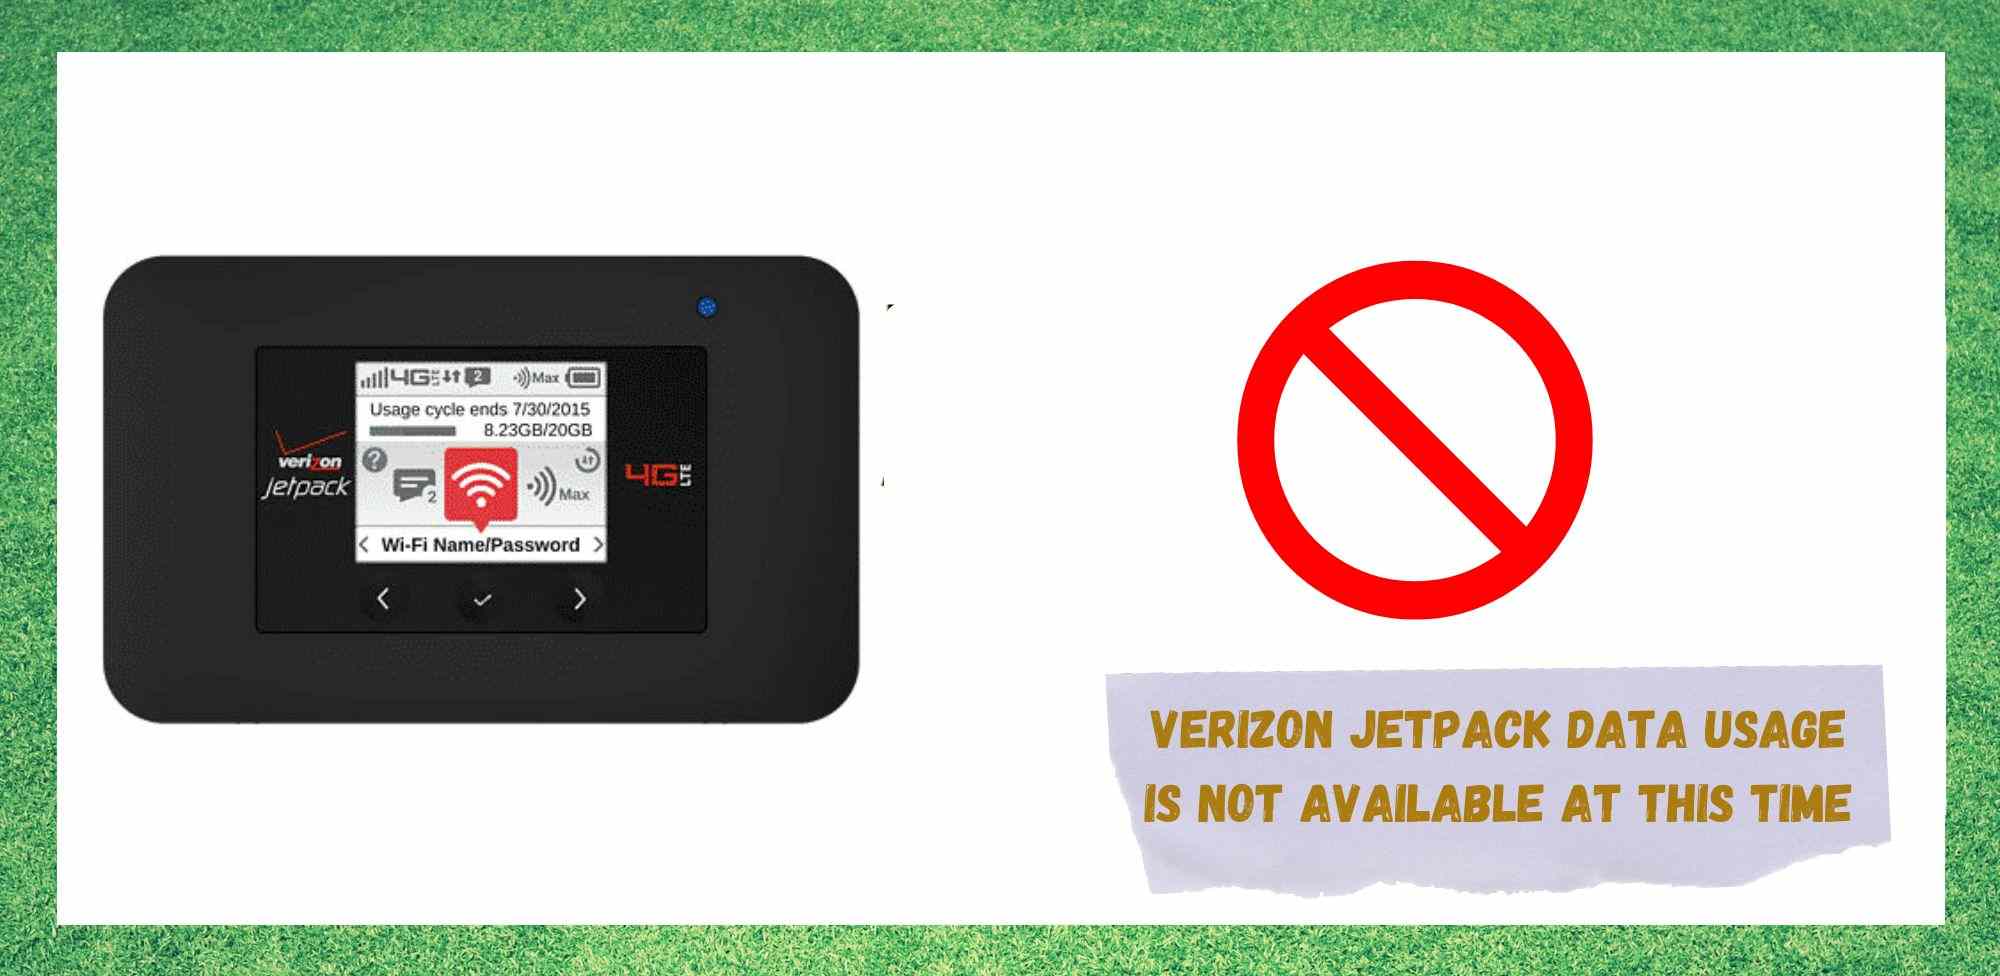 7 maneres de solucionar l'ús de dades de Verizon Jetpack no estan disponibles en aquest moment